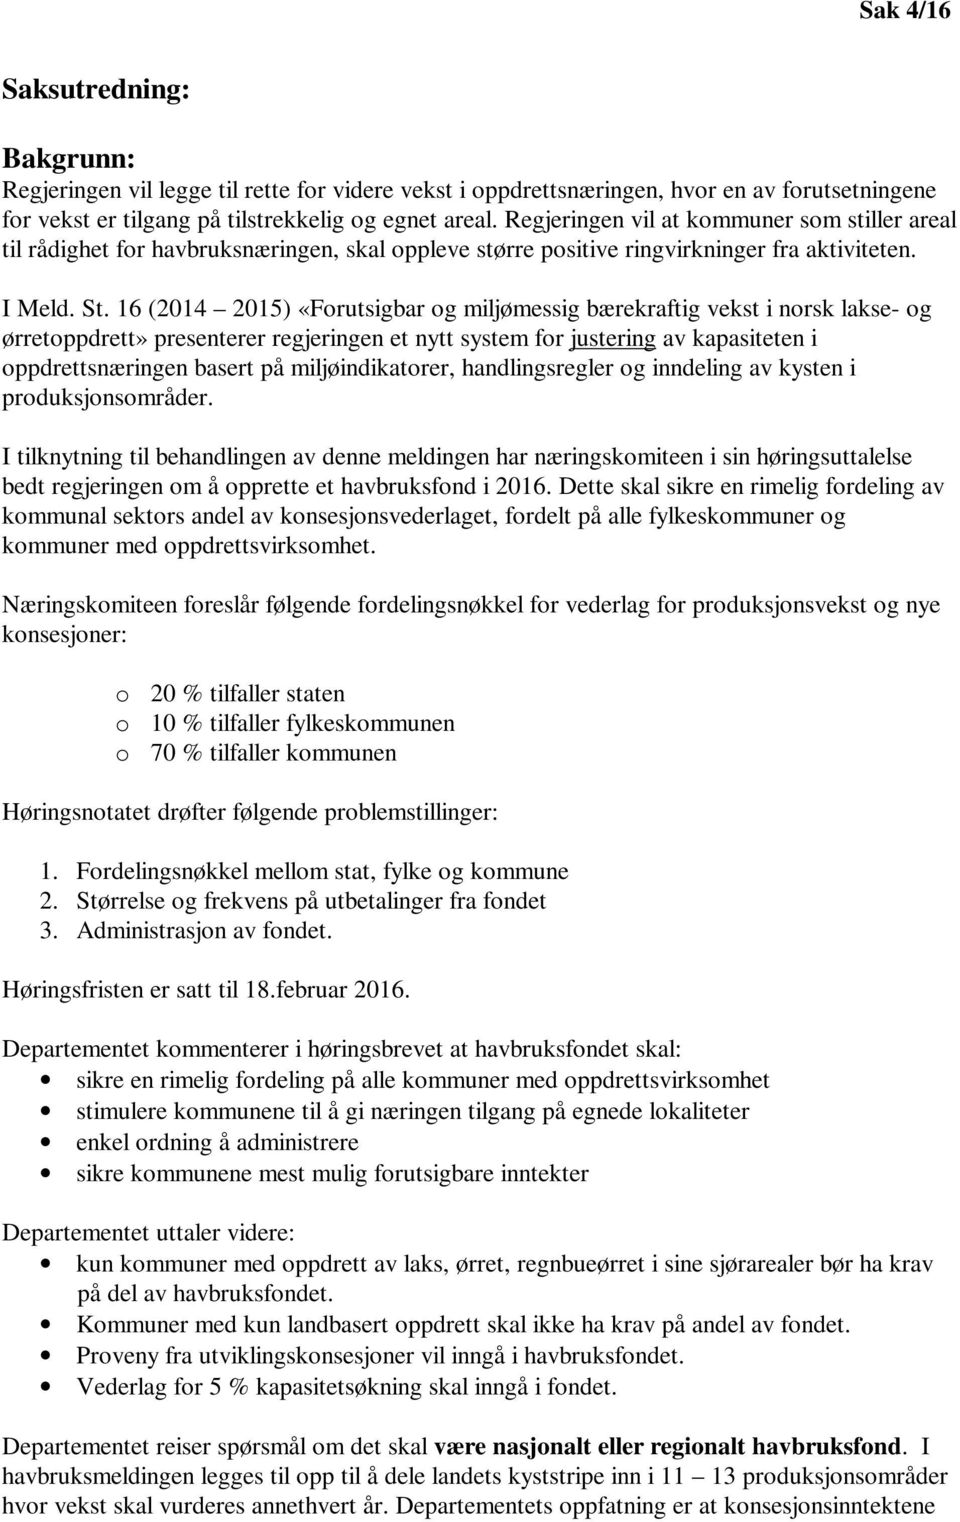 16 (2014 2015) «Forutsigbar og miljømessig bærekraftig vekst i norsk lakse- og ørretoppdrett» presenterer regjeringen et nytt system for justering av kapasiteten i oppdrettsnæringen basert på